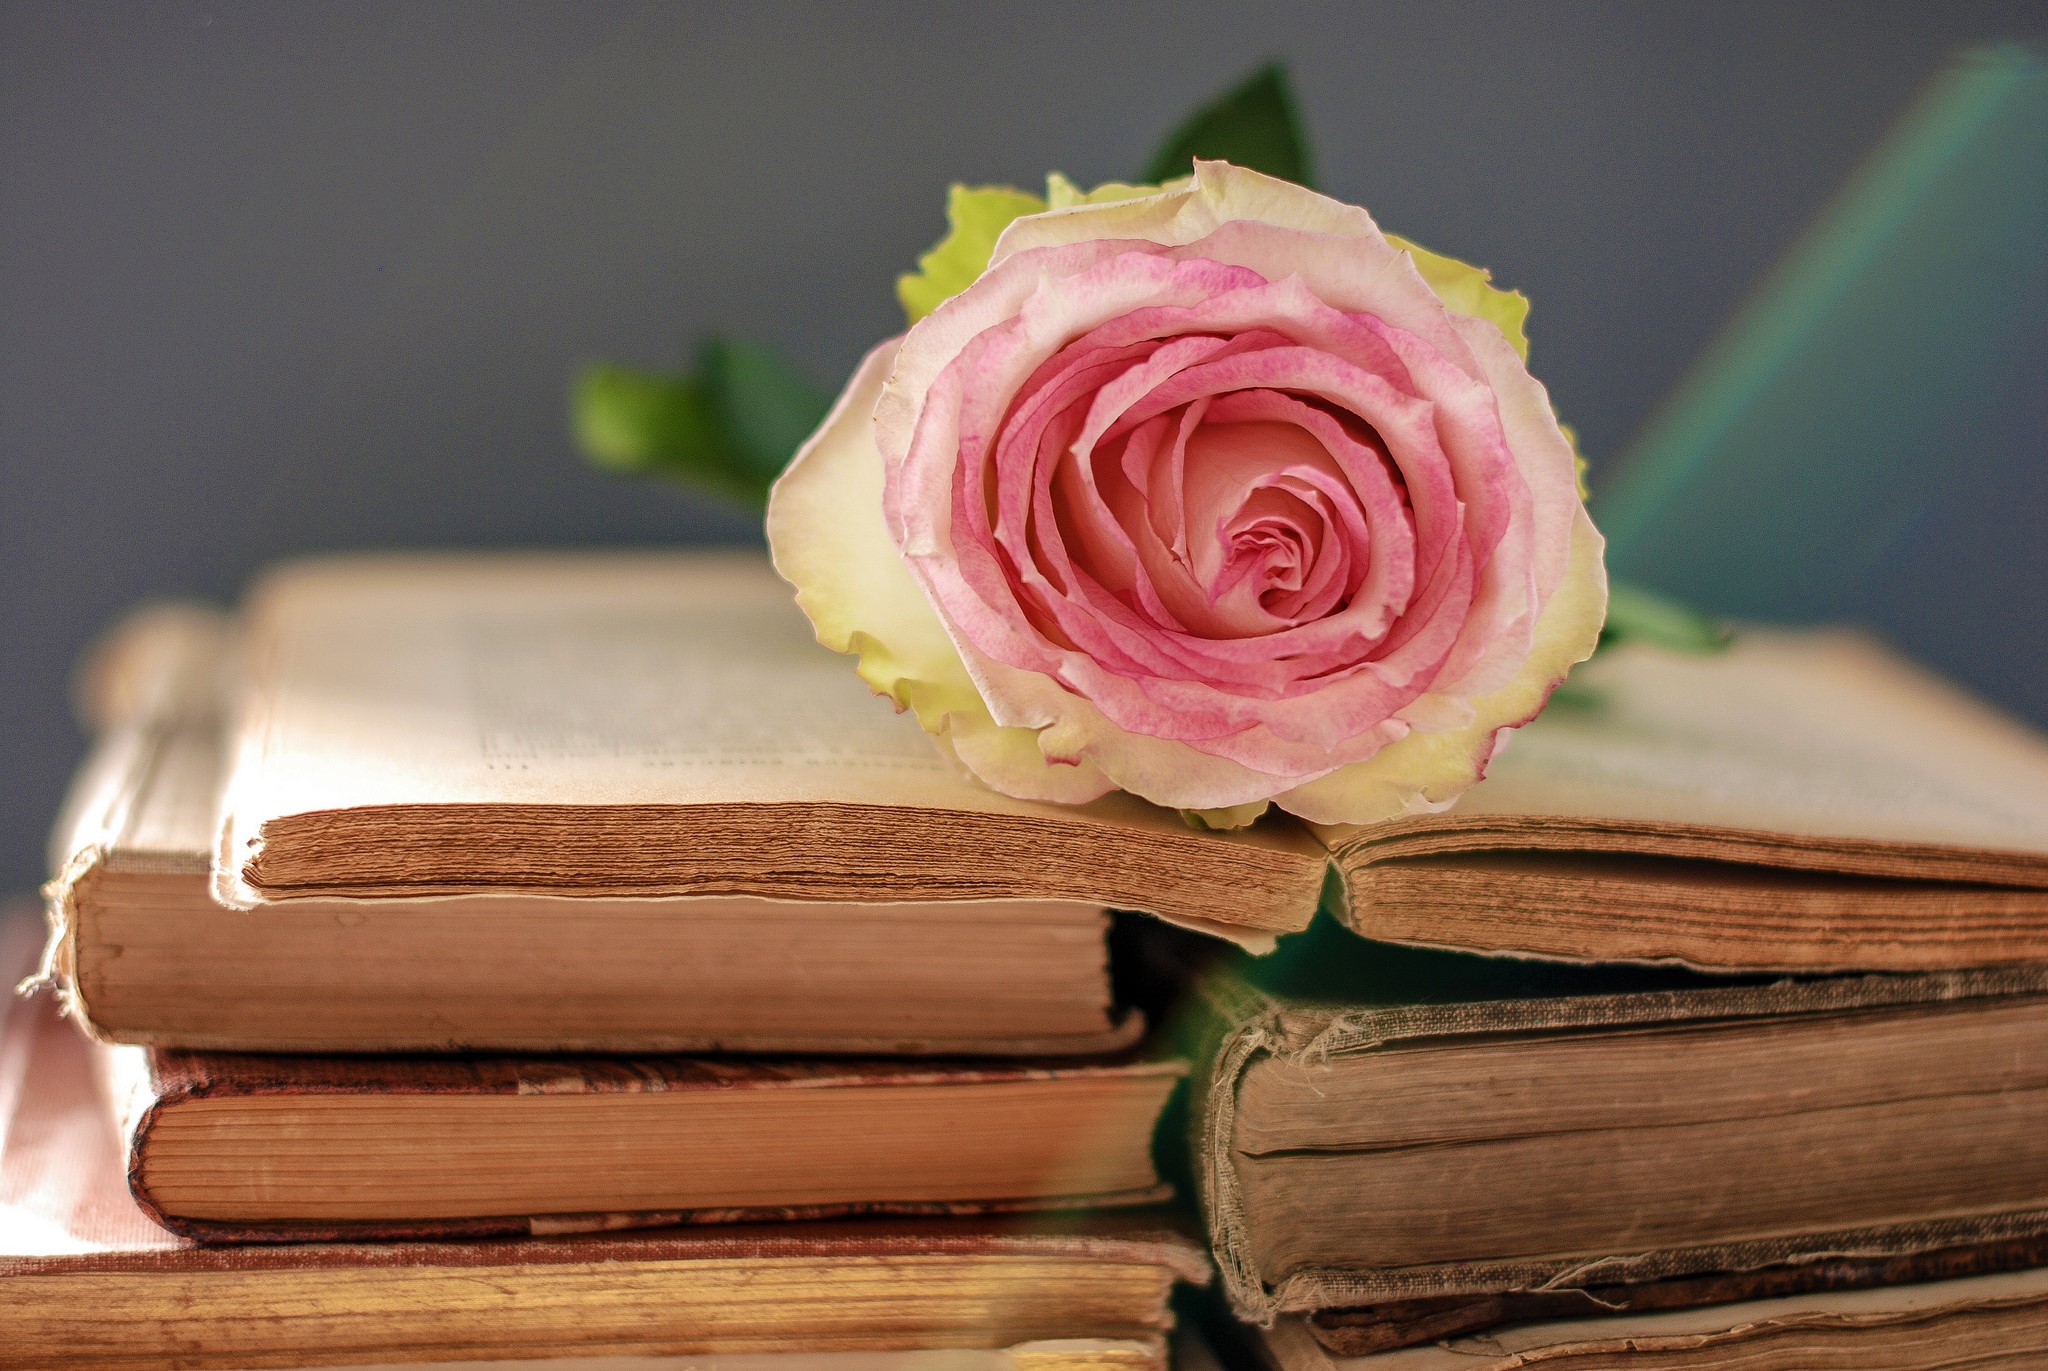 Скачать обои бесплатно Натюрморт, Роза, Книга, Фотографии, Розовая Роза картинка на рабочий стол ПК